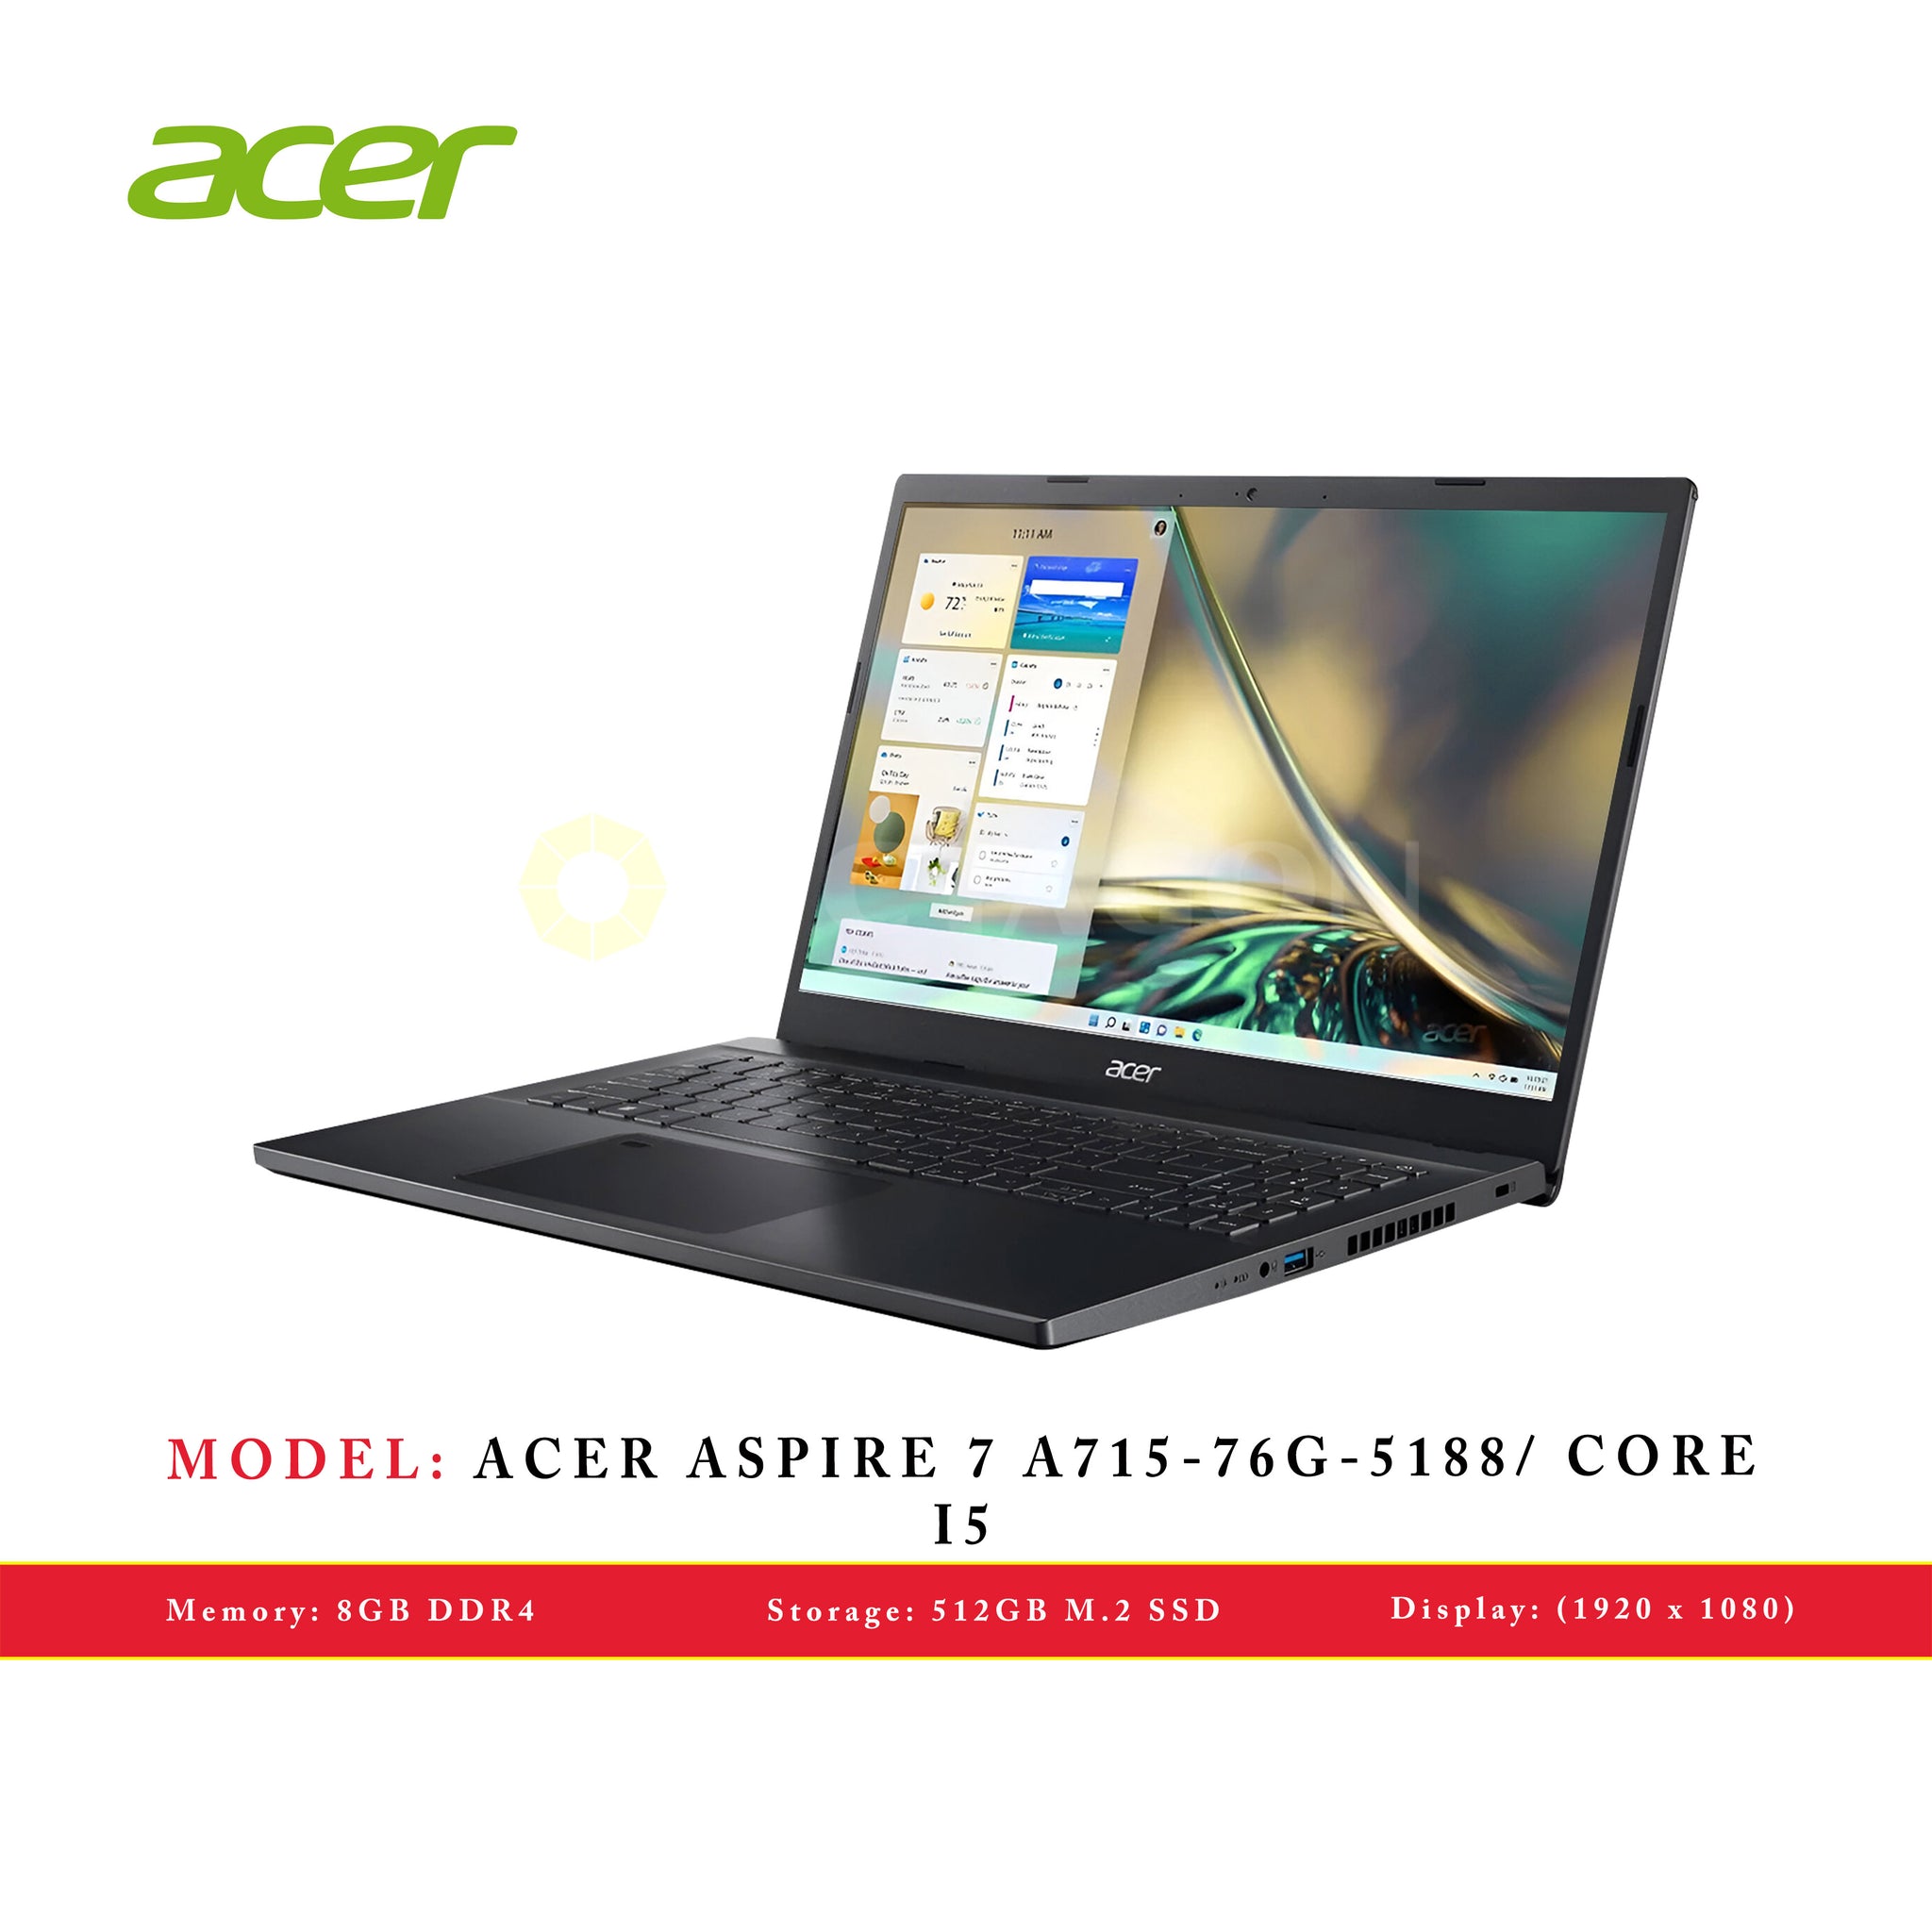 ACER ASPIRE 7 A715-76G-5188/ CORE I5